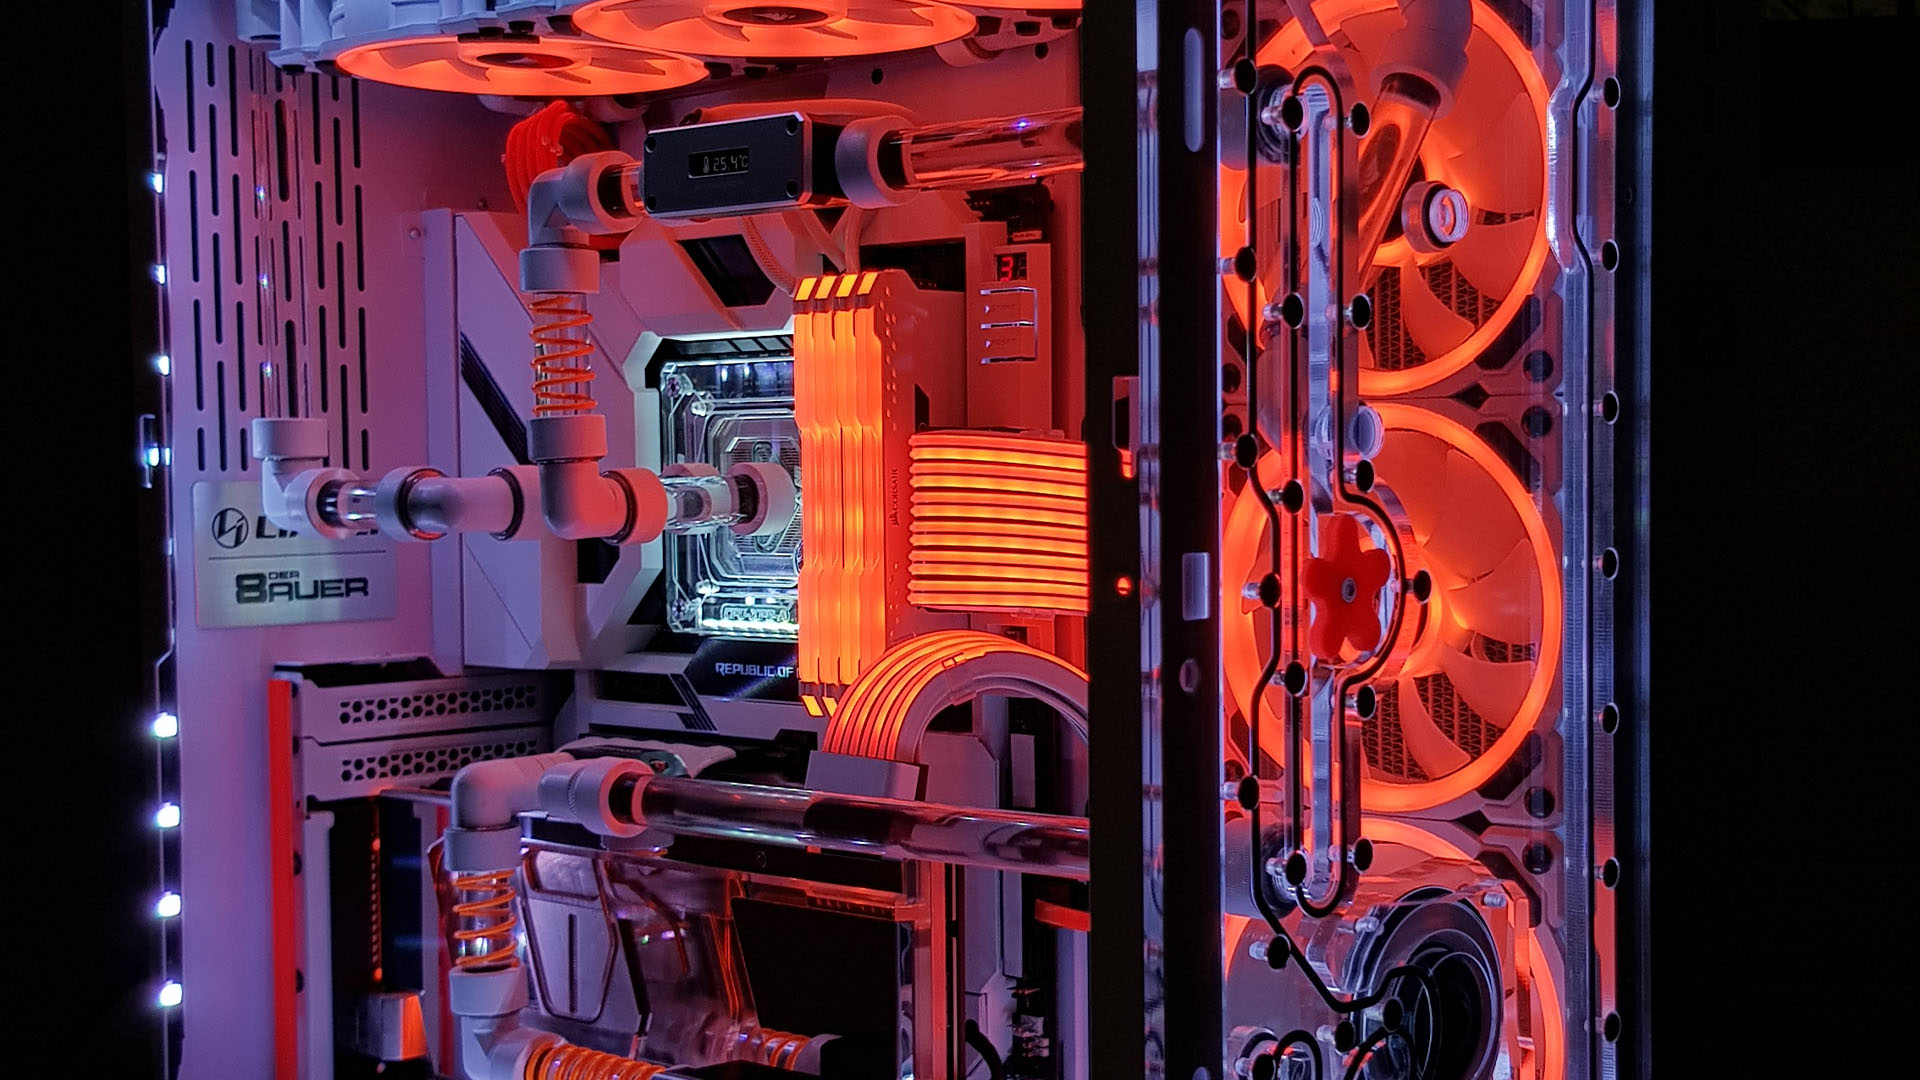 La PC para juegos de Star Wars está bañada por una luz RGB naranja